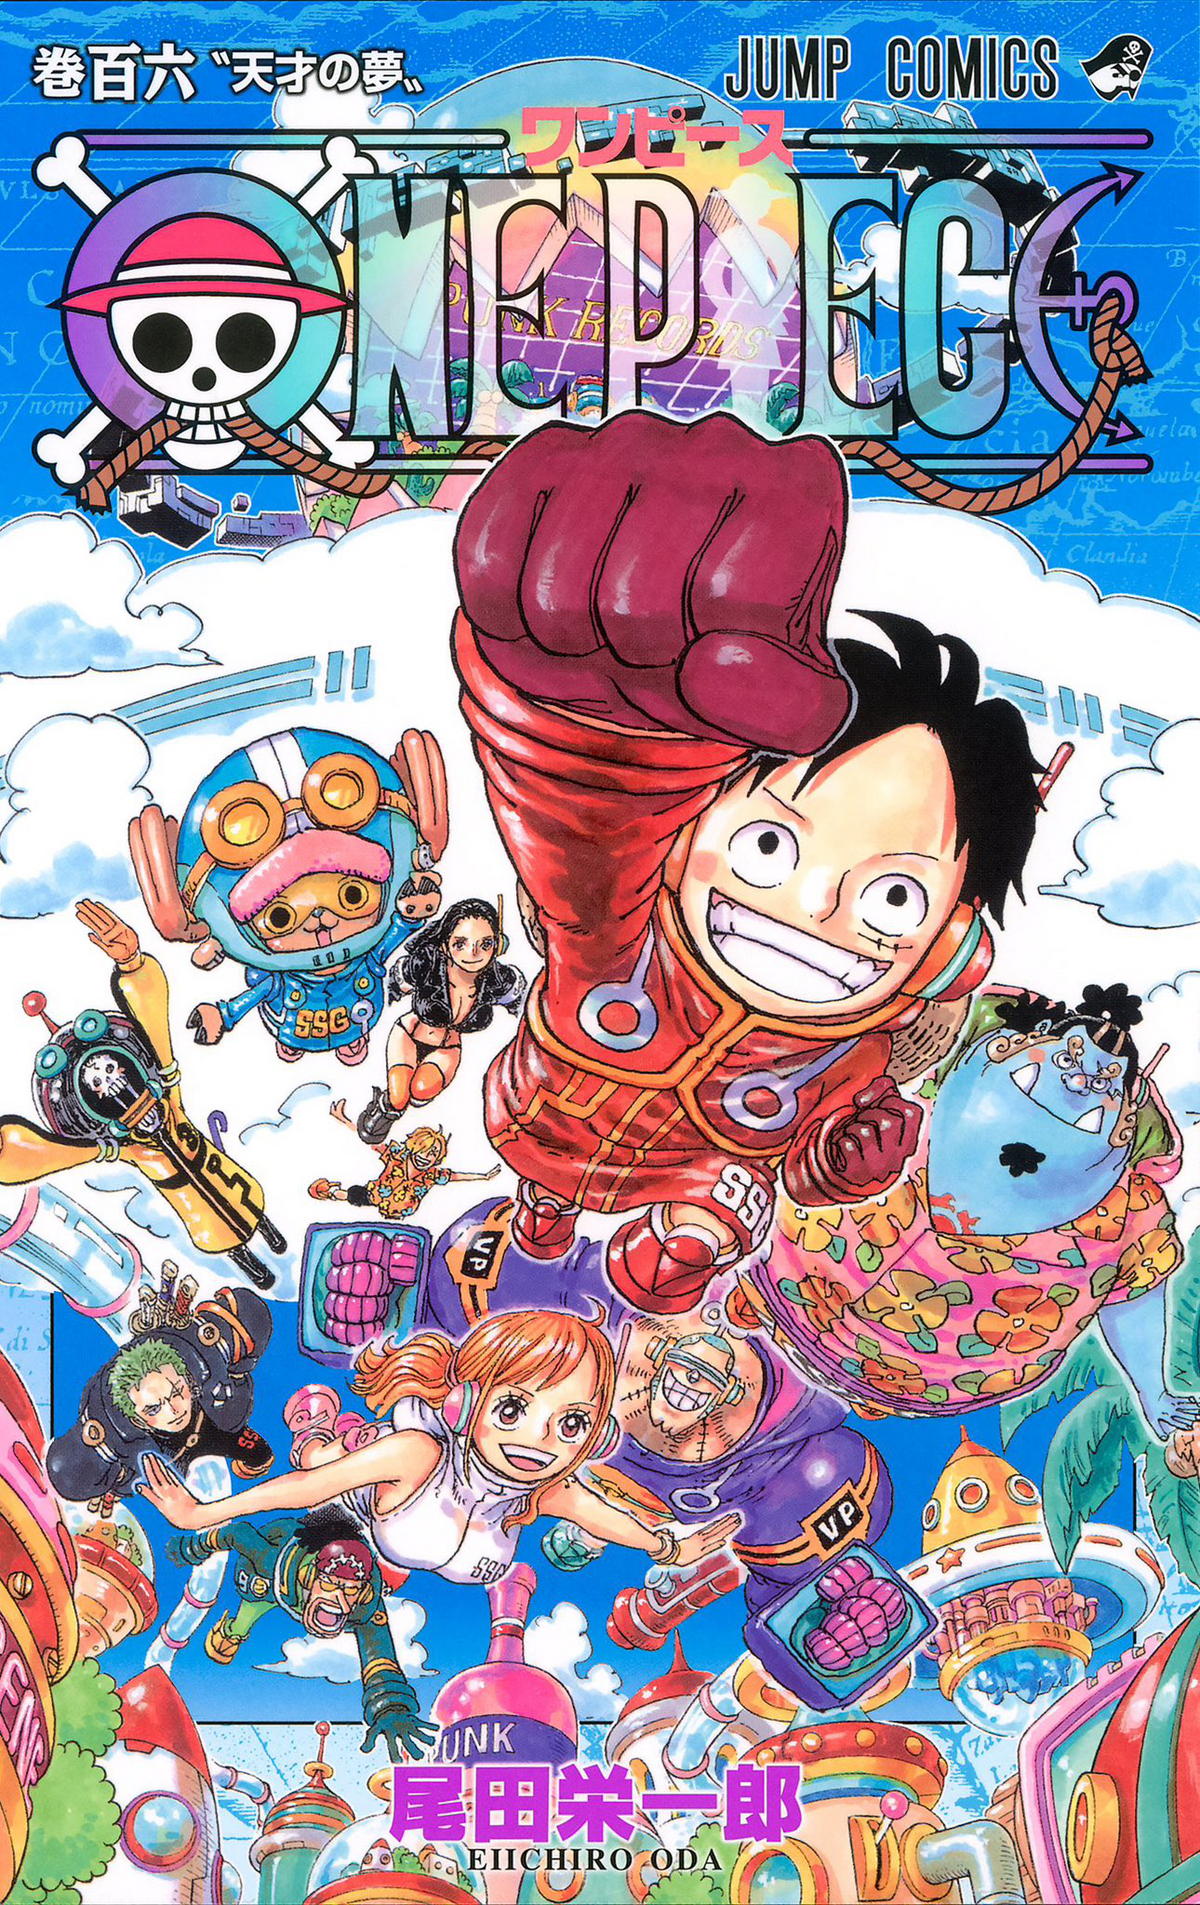 One Piece tome 106 édition collector premier tirage avec